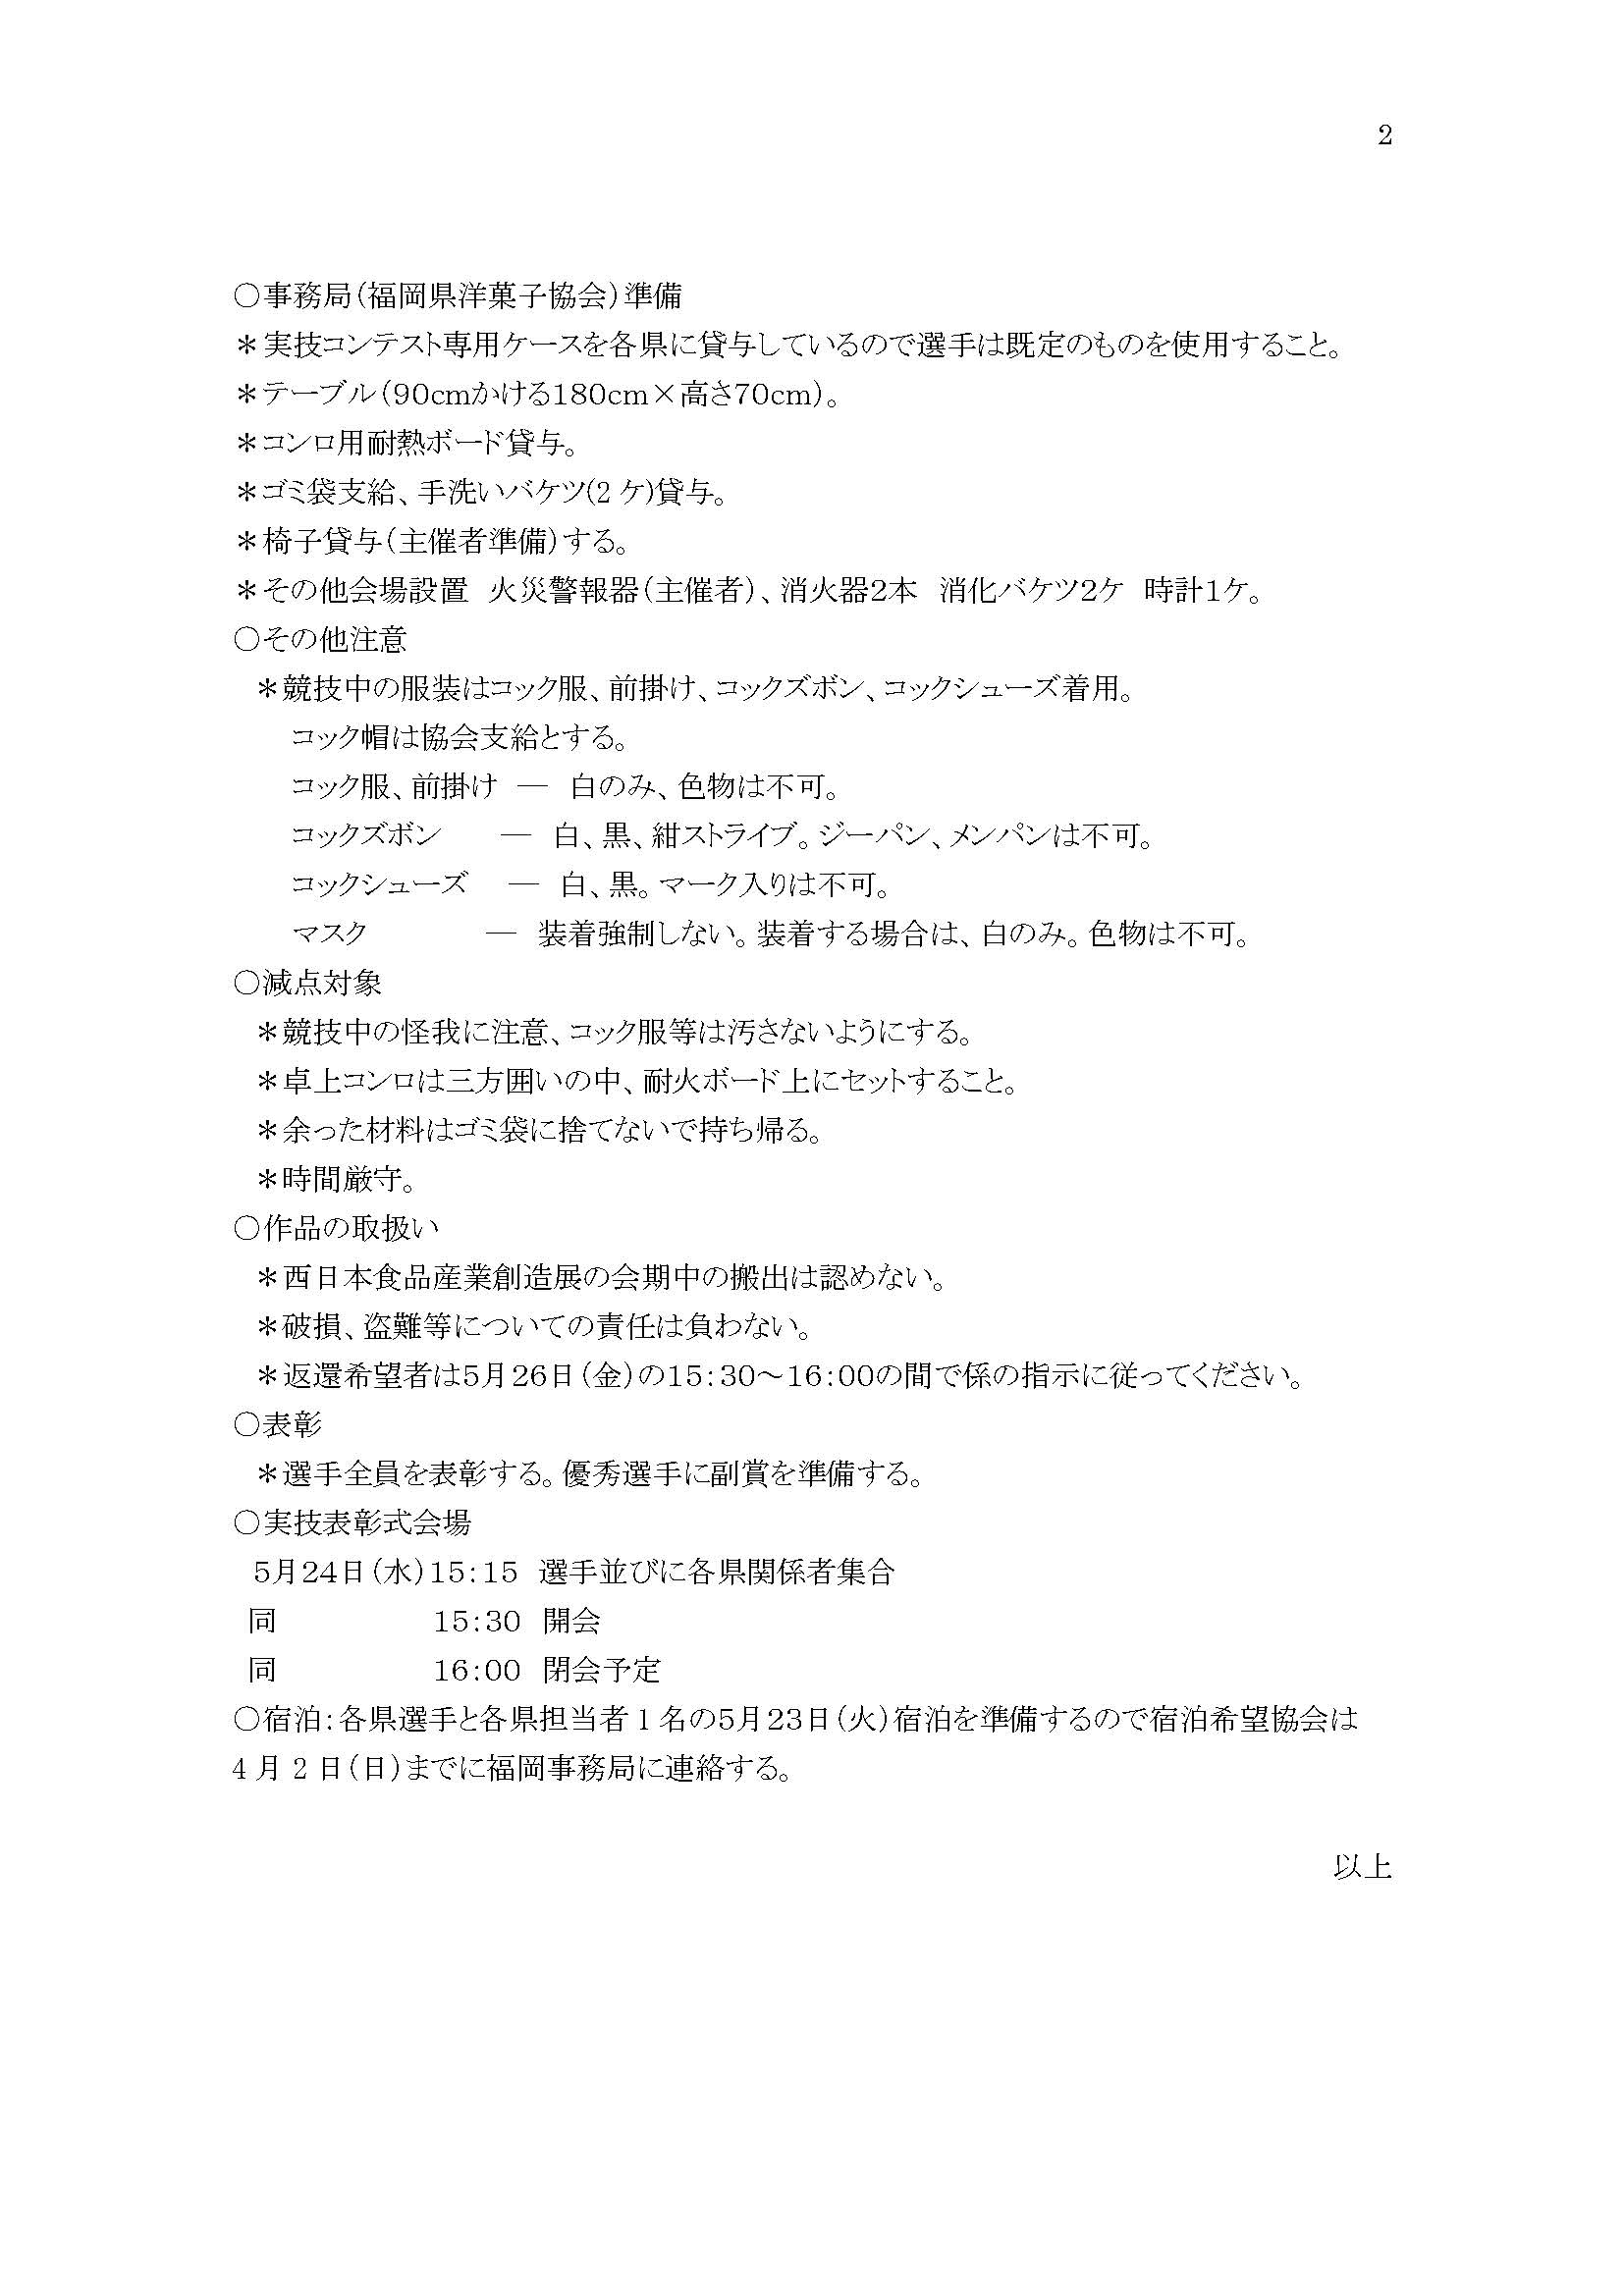 令和5年全九州洋菓子実技コンテスト福岡大会要領等 (1)_ページ_2.jpg